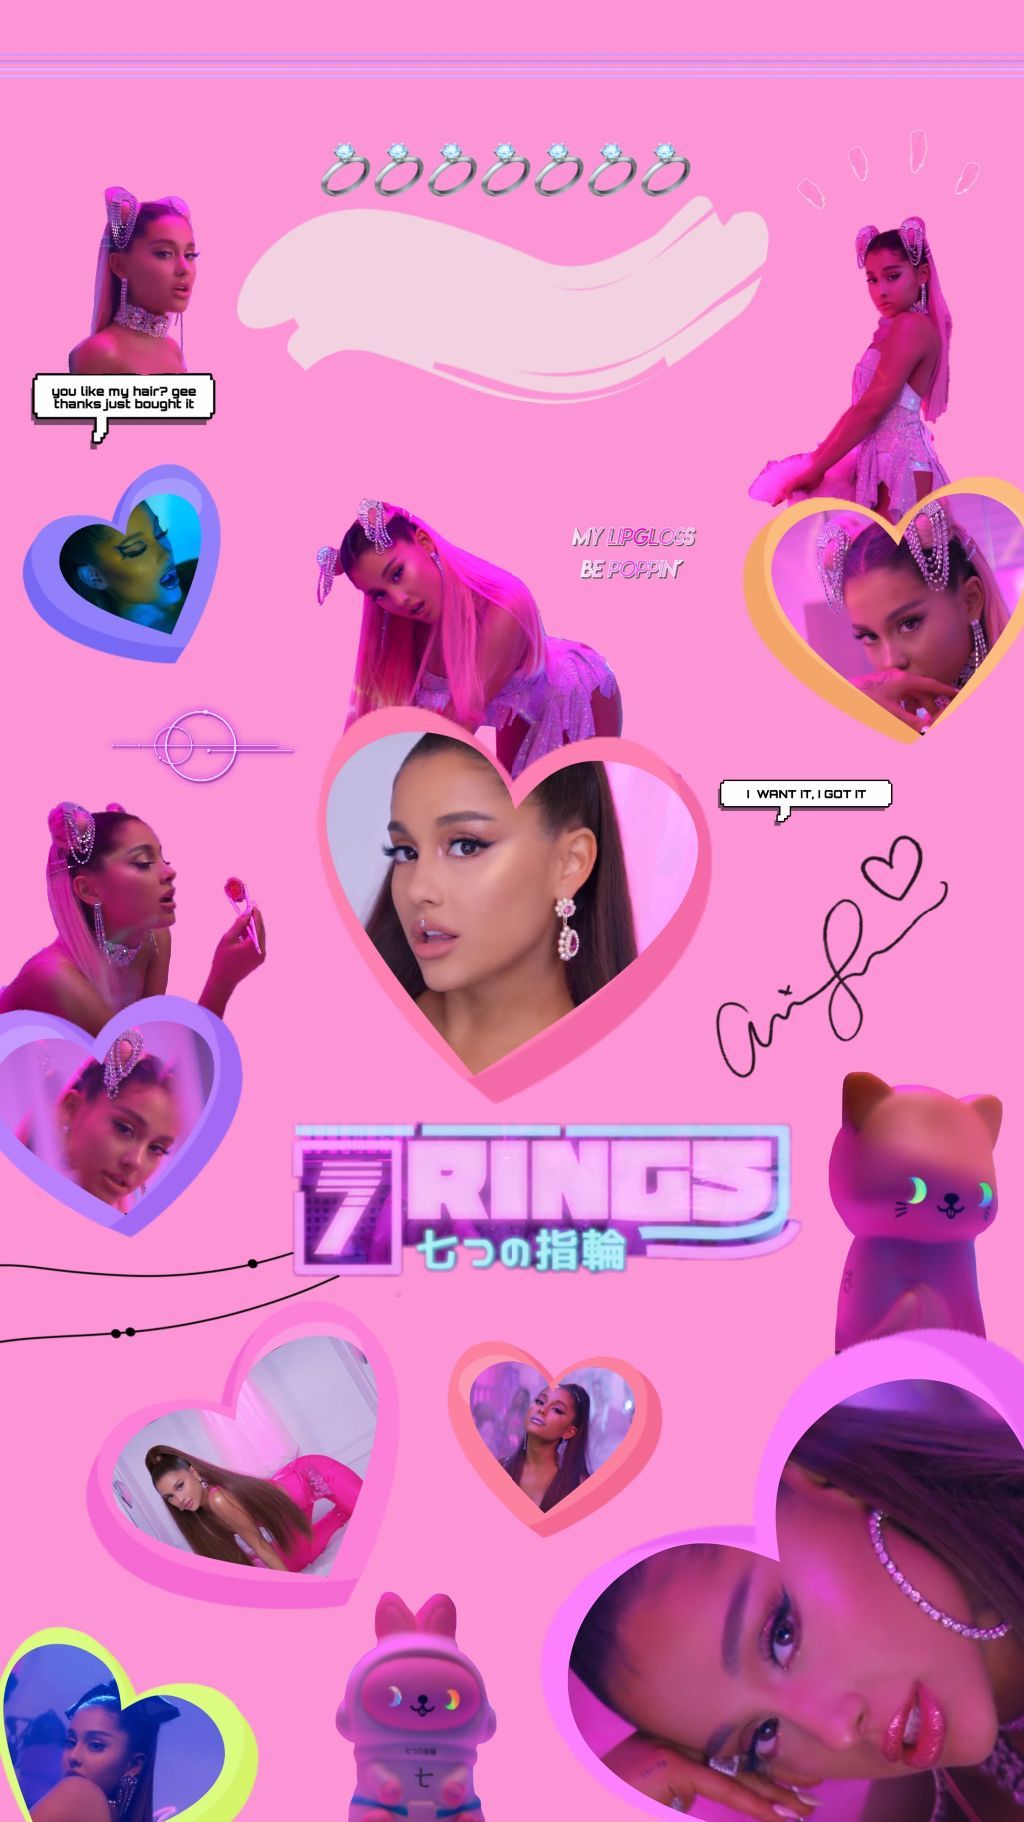 Ariana Grande 7 Rings Wallpaper iPhone Grande Songs